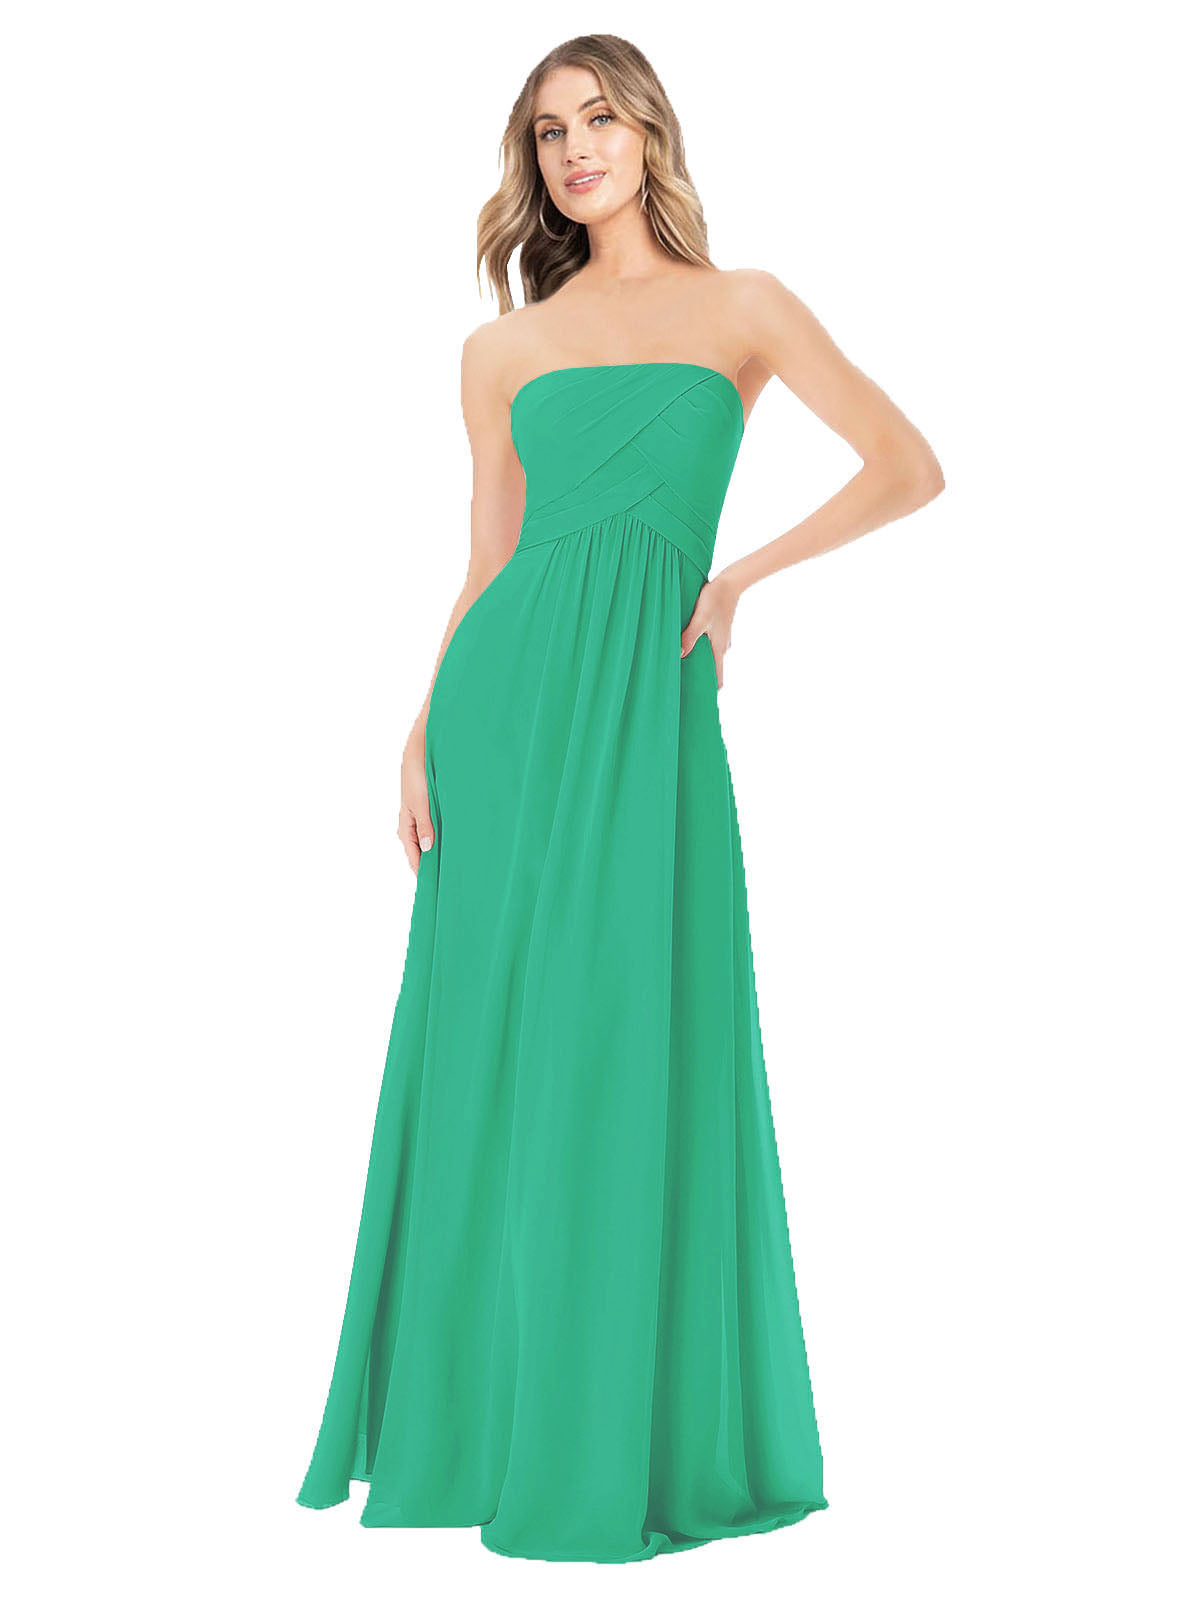 Emerald Green A-Line Strapless Sleeveless Long Bridesmaid Dress Ciel